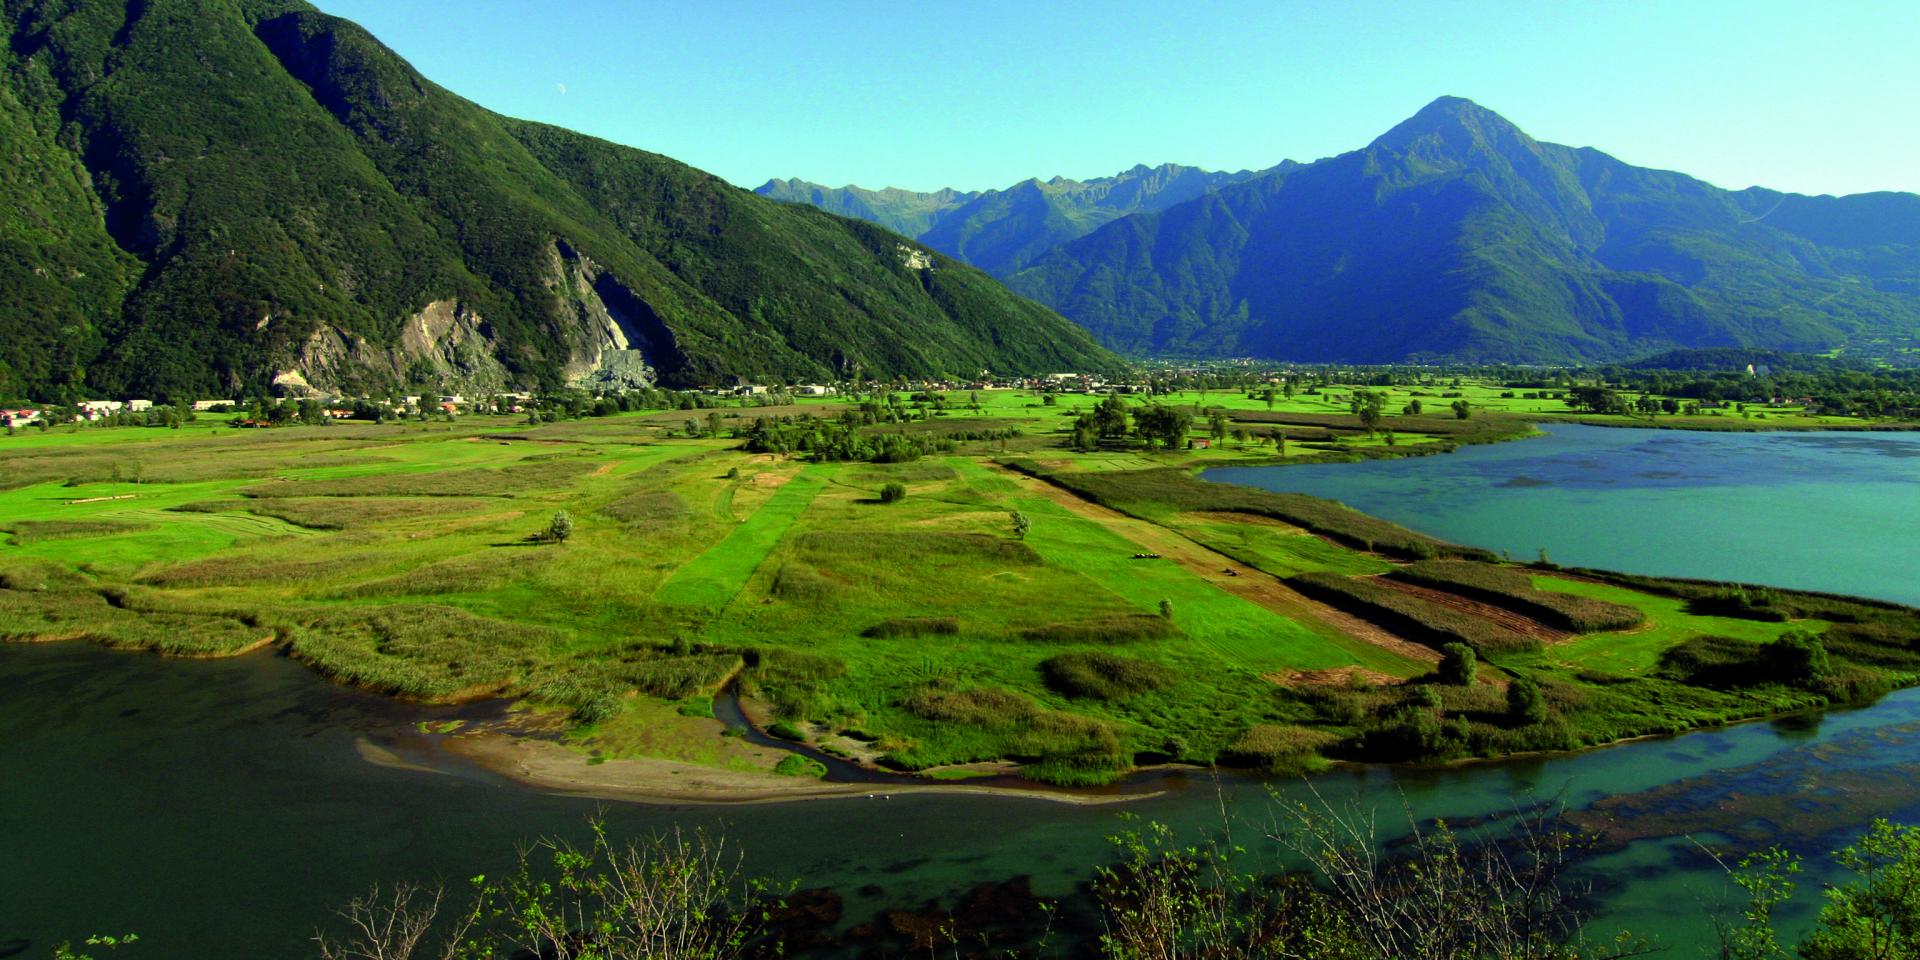 Borradura Personas mayores Alegre Riserva Naturale Pian di Spagna e Lago di Mezzola - North Lake Como